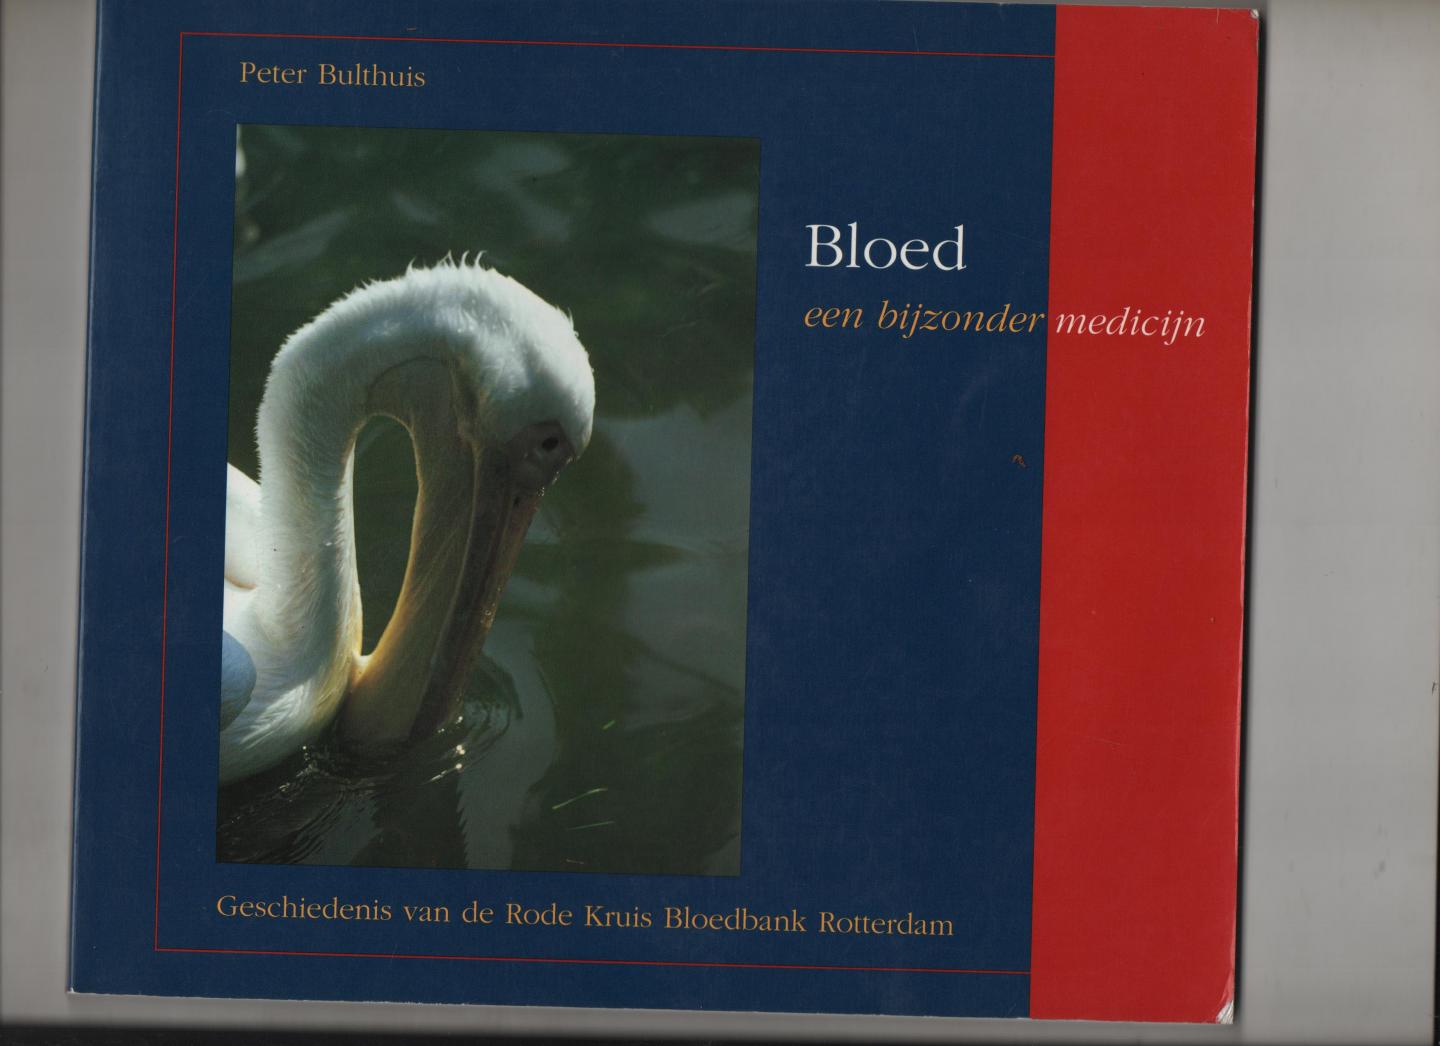 Bulthuis, Peter - Bloed, een bijzonder medicijn. Geschiedenis van de Rode Kruis Bloedbank Rotterdam.